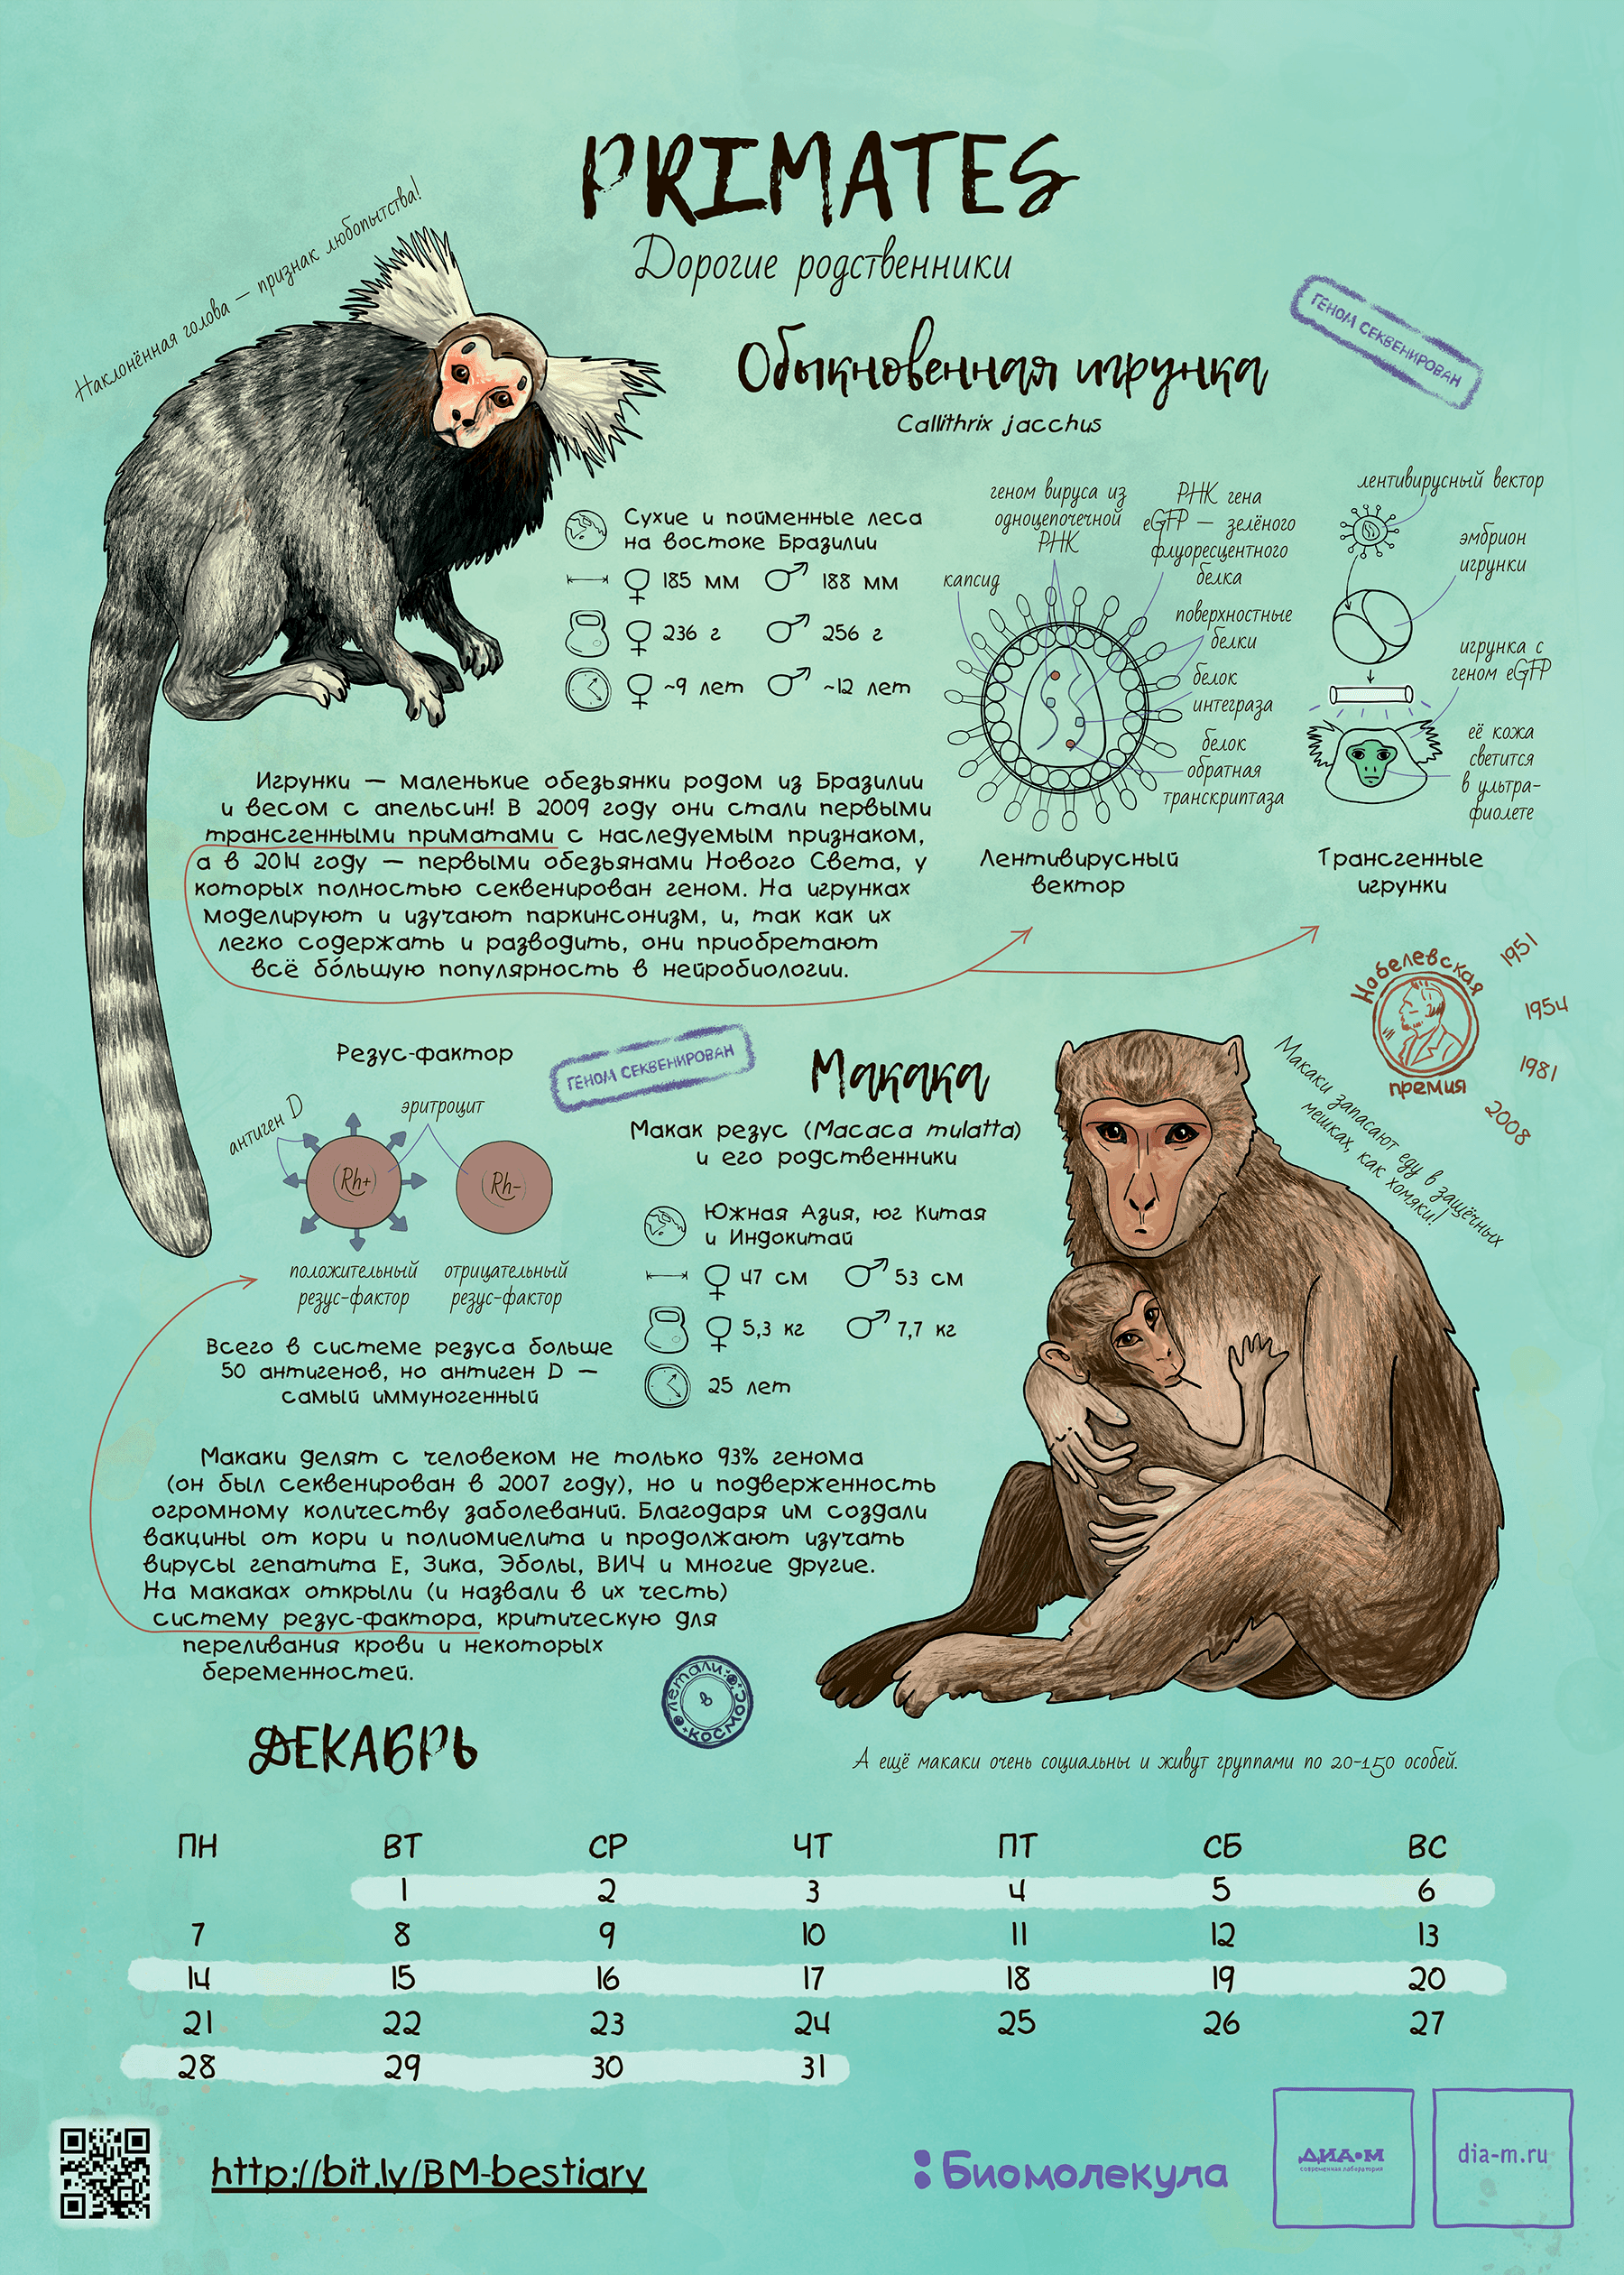 Приматы — герои календаря «Биомолекулы»